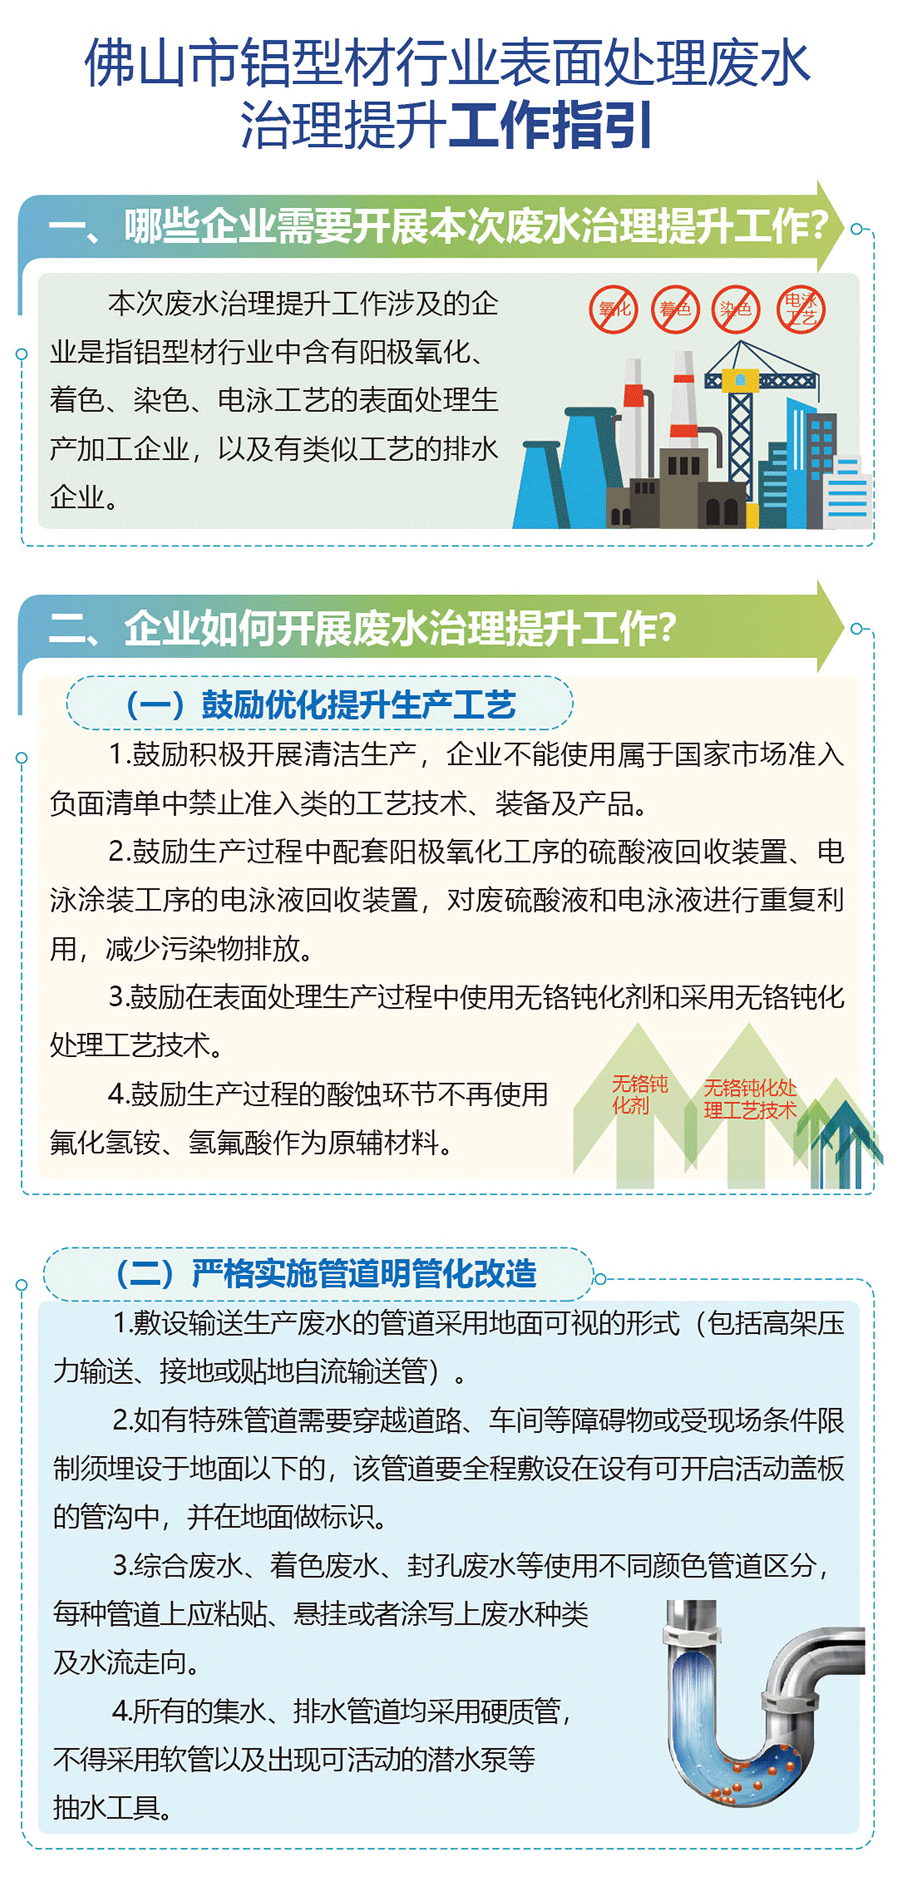 鋁型材行業表面處理廢水治理提升工作調研會議在華昌集團舉行